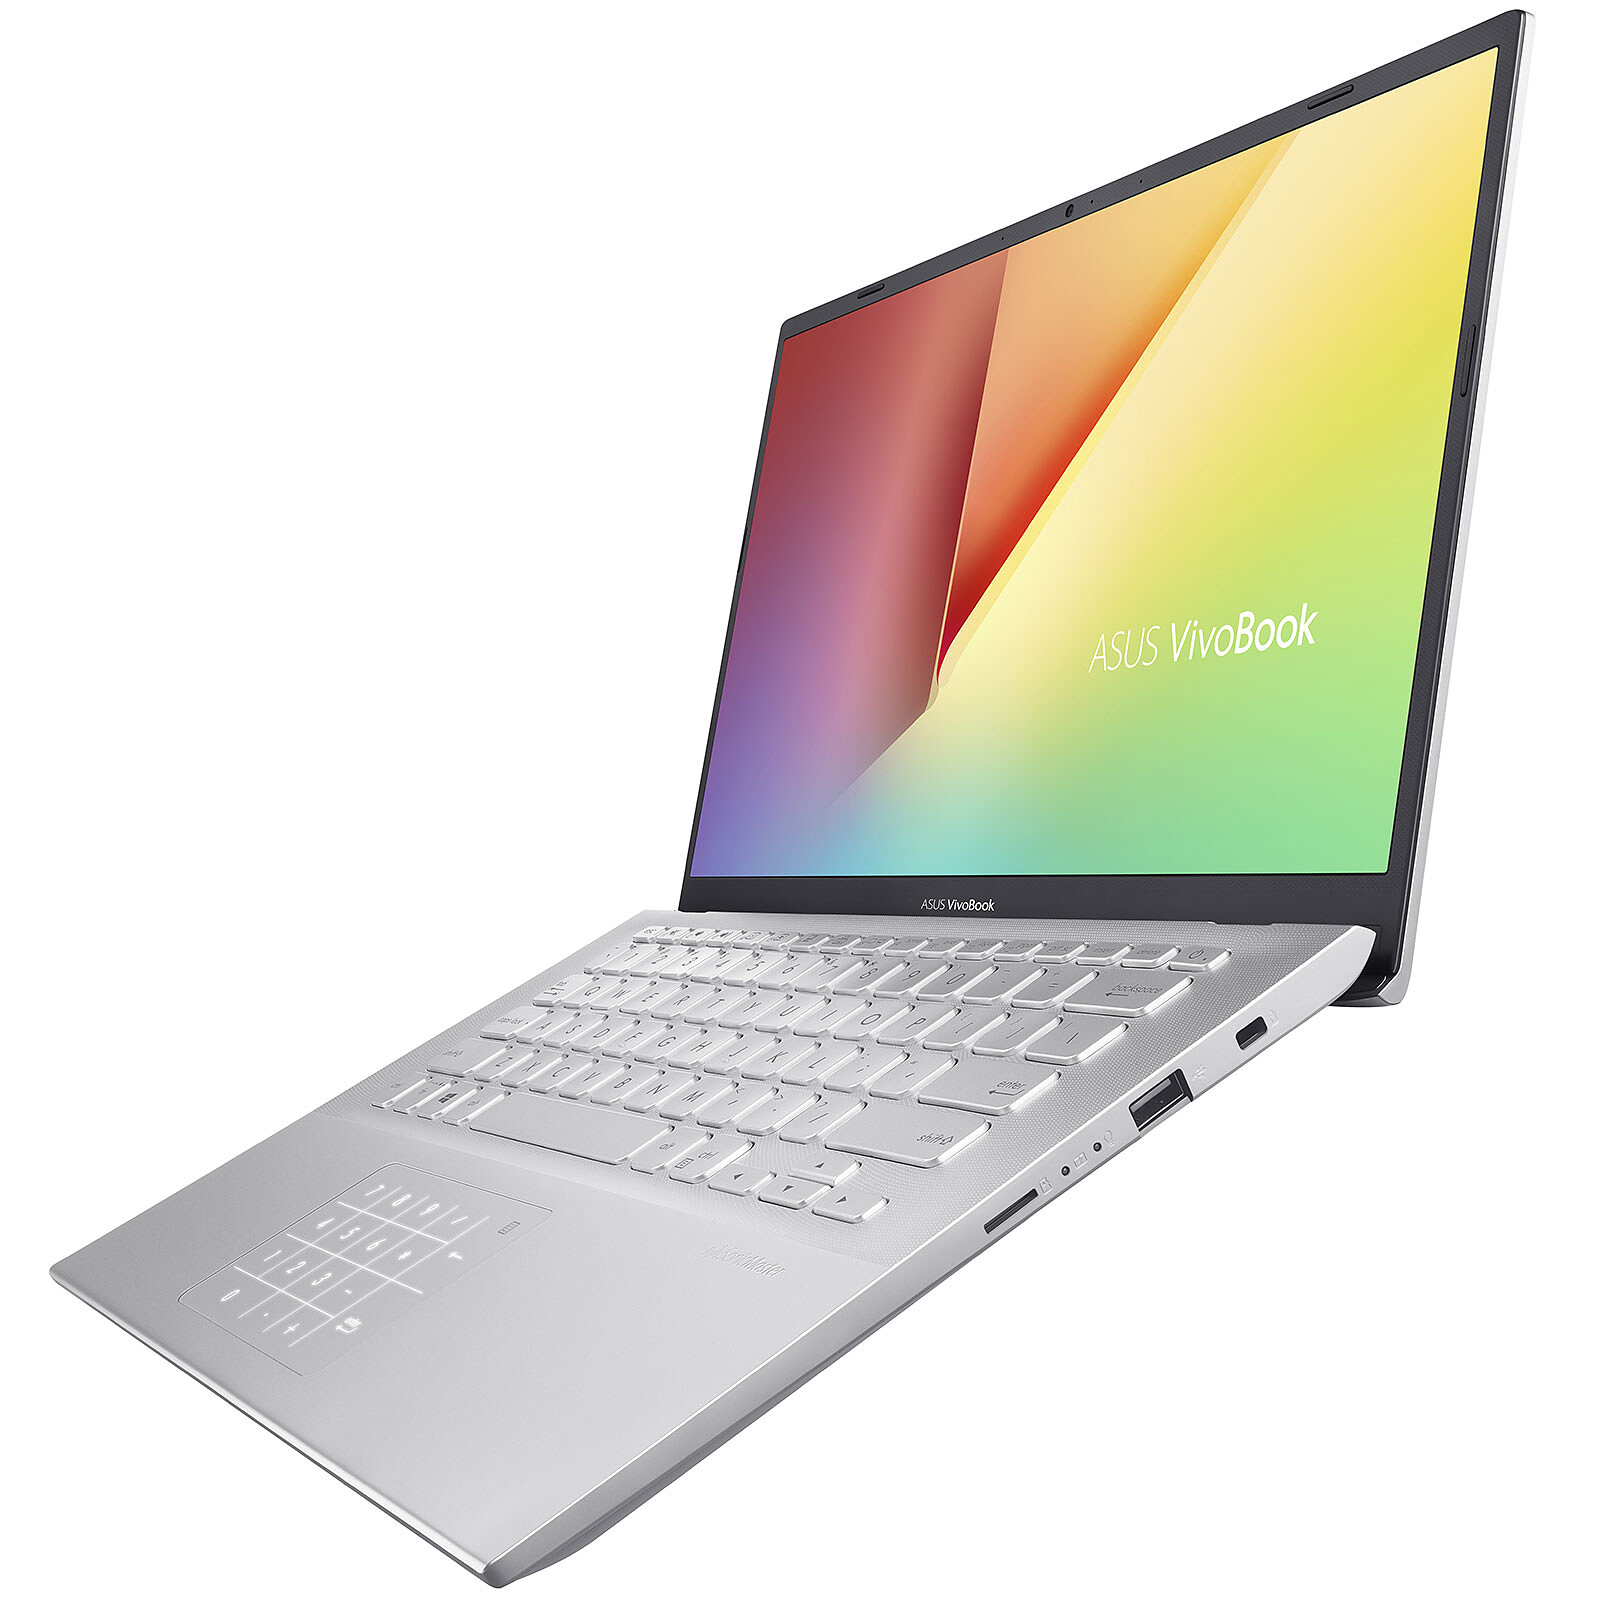 ASUS Vivobook S14 S412DA-EK185T avec NumberPad - PC portable - LDLC